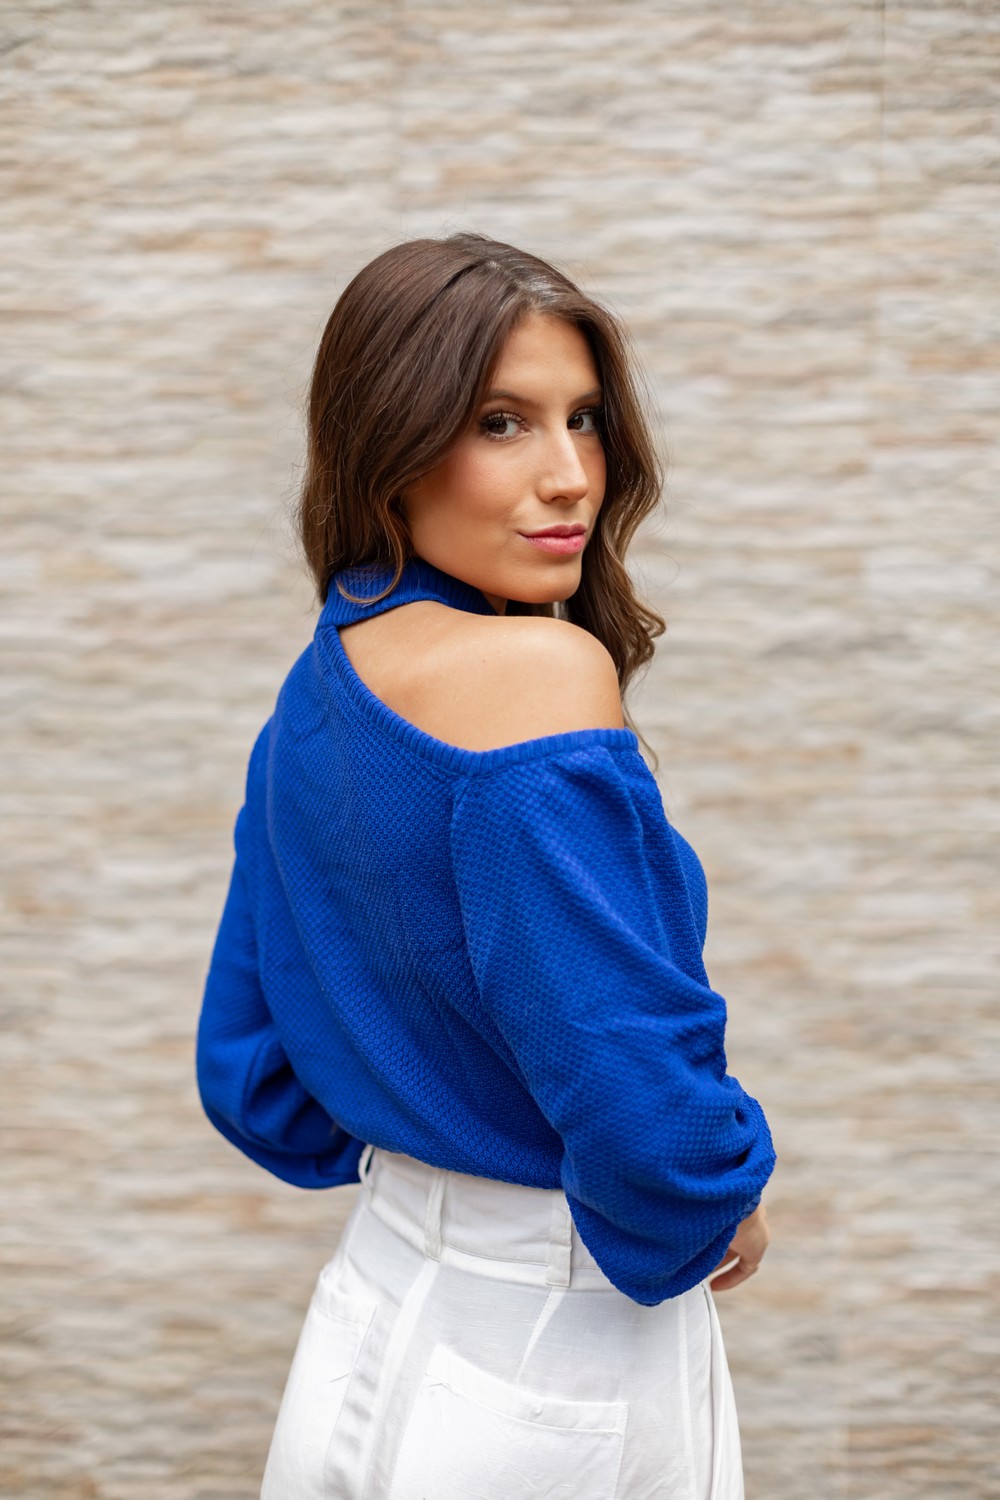 Blusa de Tricot Ombro  Mariana - Azul Bic